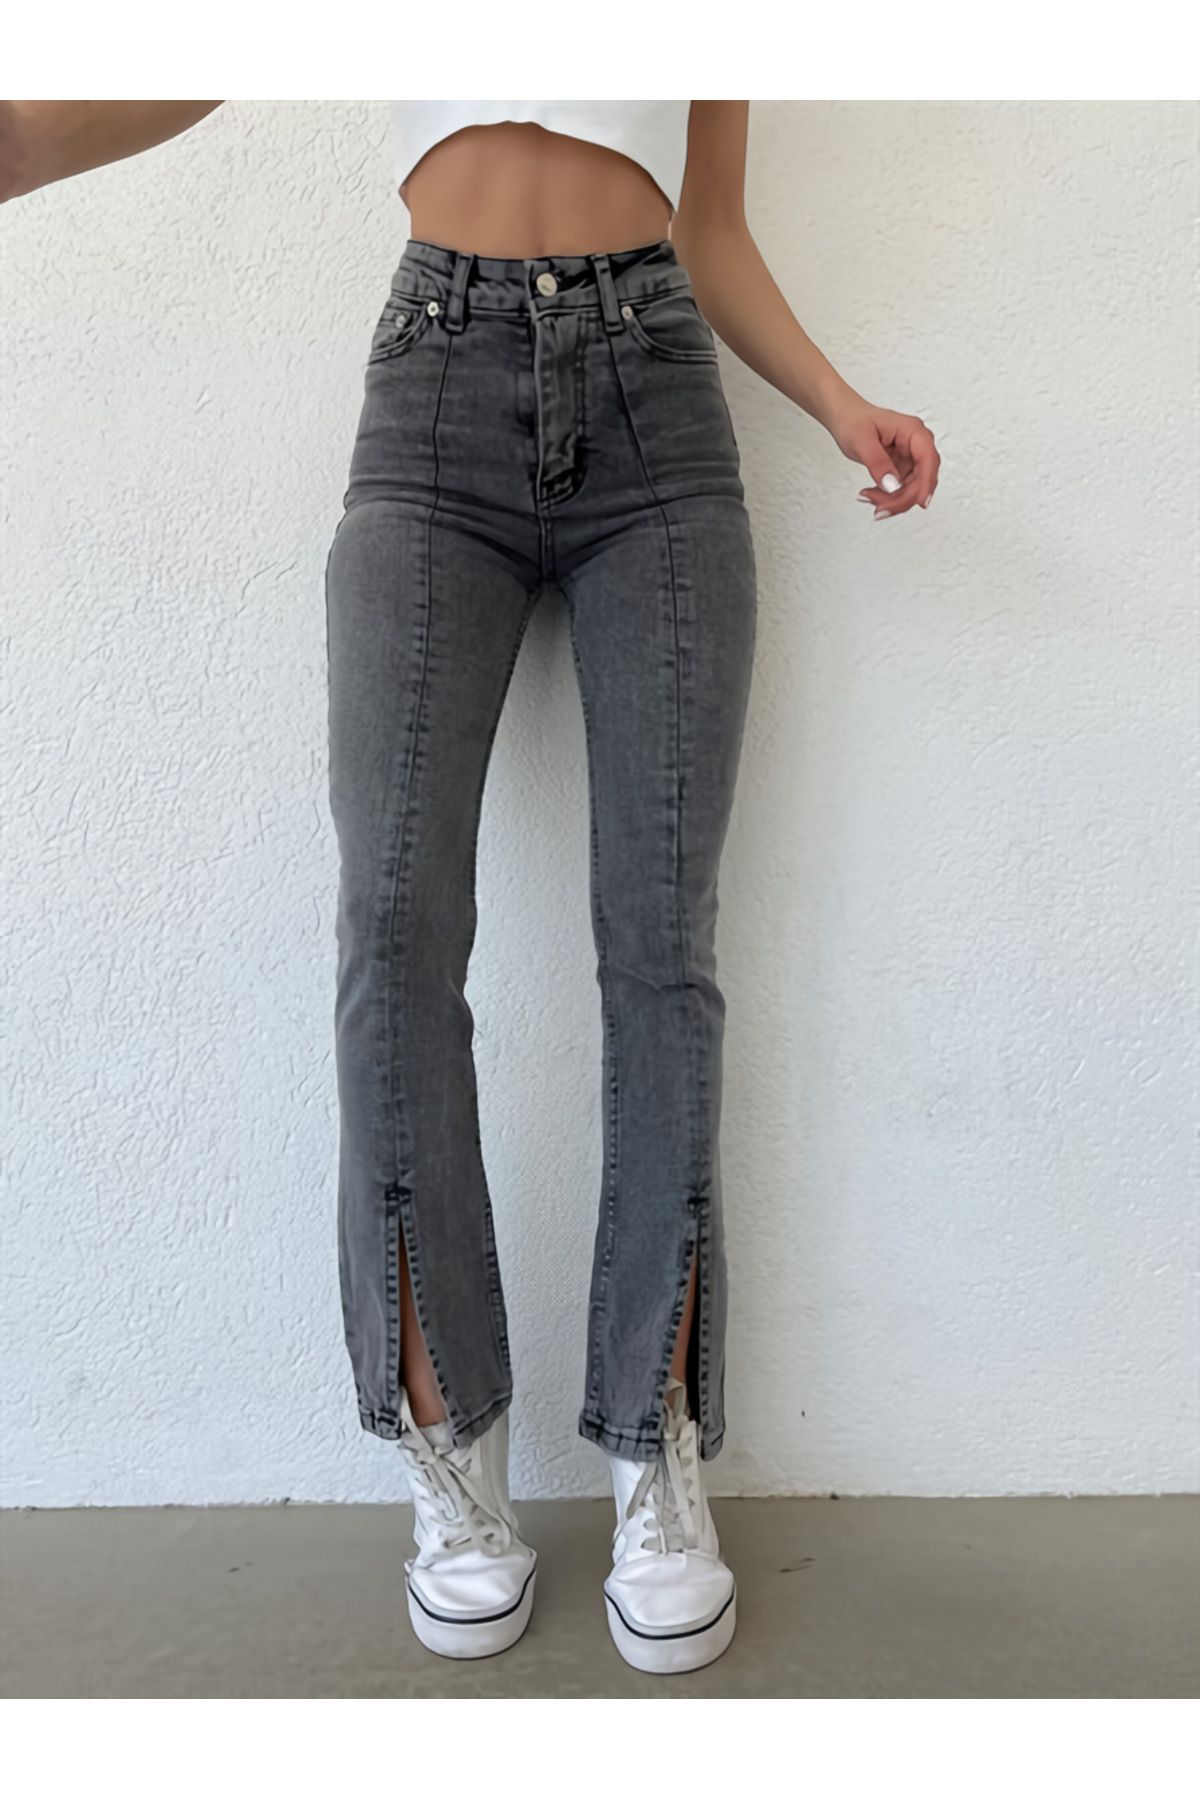 LİMABEL Kadın Füme Yüksek Bel Ön Yırtmaçlı Jeans İspanyol Paça Kot Pantolon